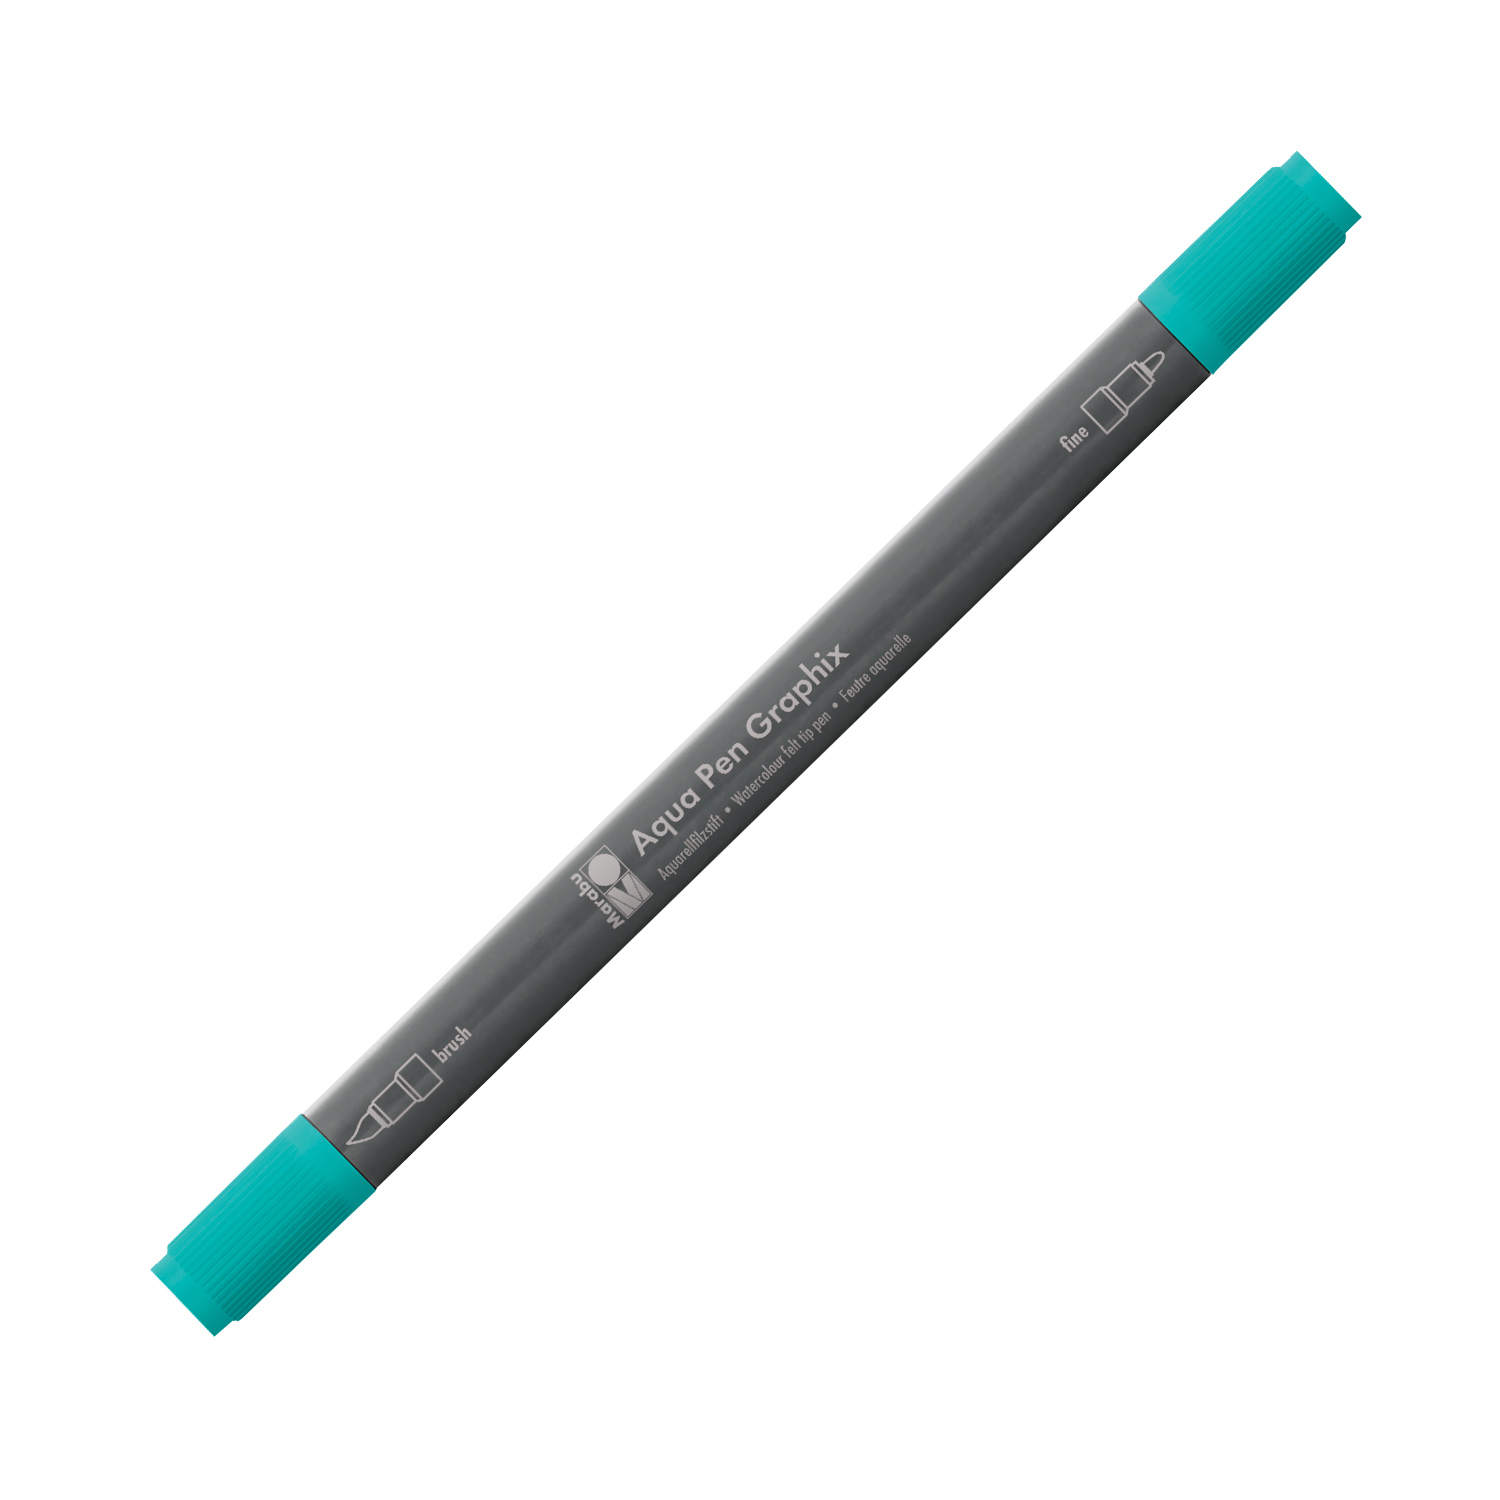 MARABU Aqua Pen Graphix mit Doppelspitze aquagrün